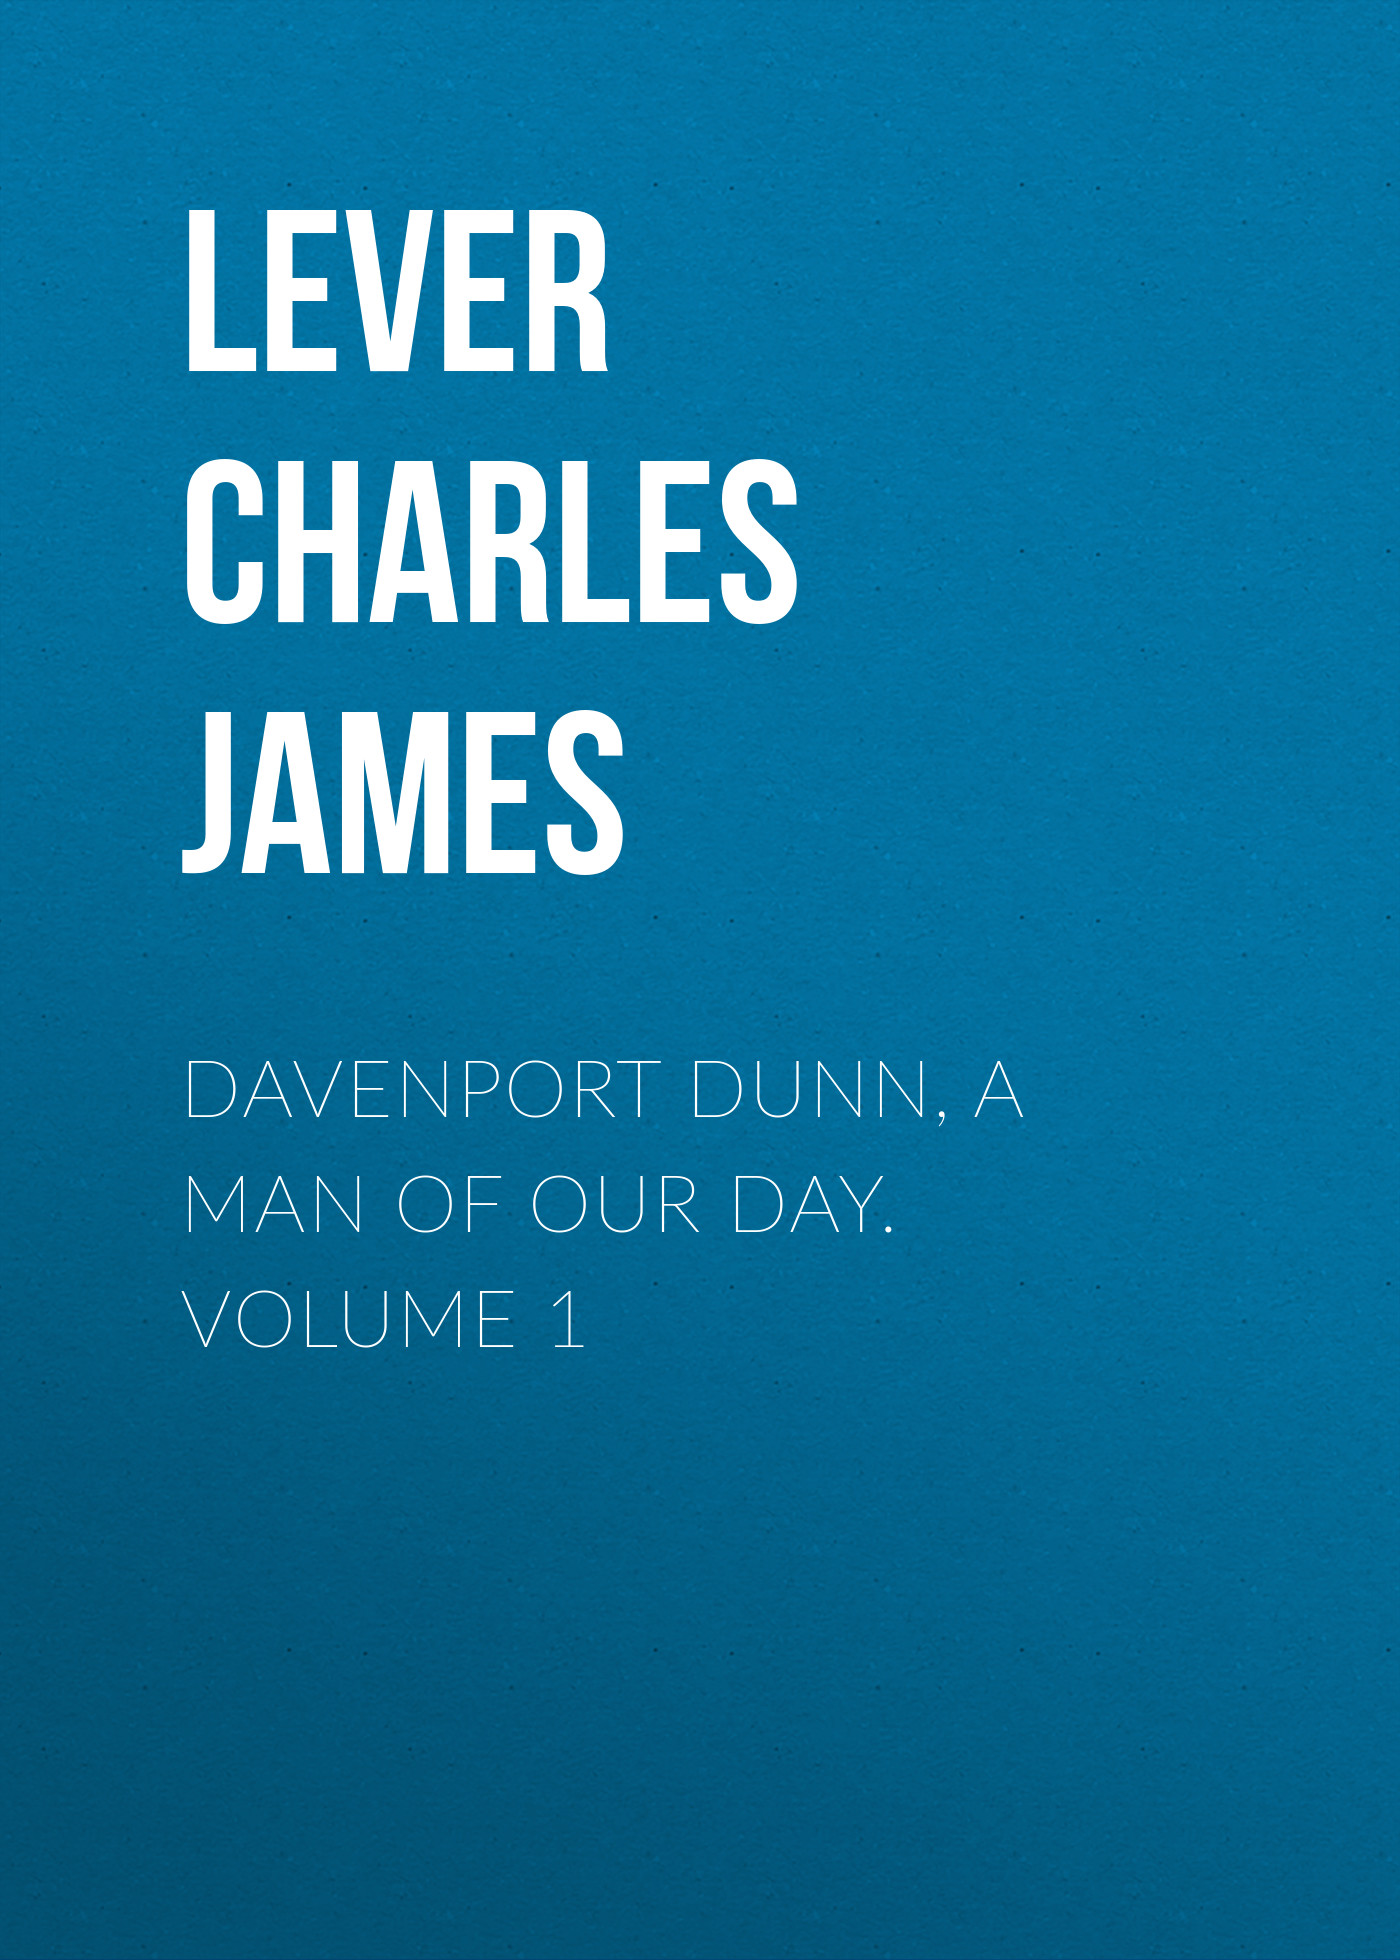 Книга Davenport Dunn, a Man of Our Day. Volume 1 из серии , созданная Charles Lever, может относится к жанру Литература 19 века, Зарубежная старинная литература, Зарубежная классика. Стоимость электронной книги Davenport Dunn, a Man of Our Day. Volume 1 с идентификатором 25448460 составляет 0 руб.